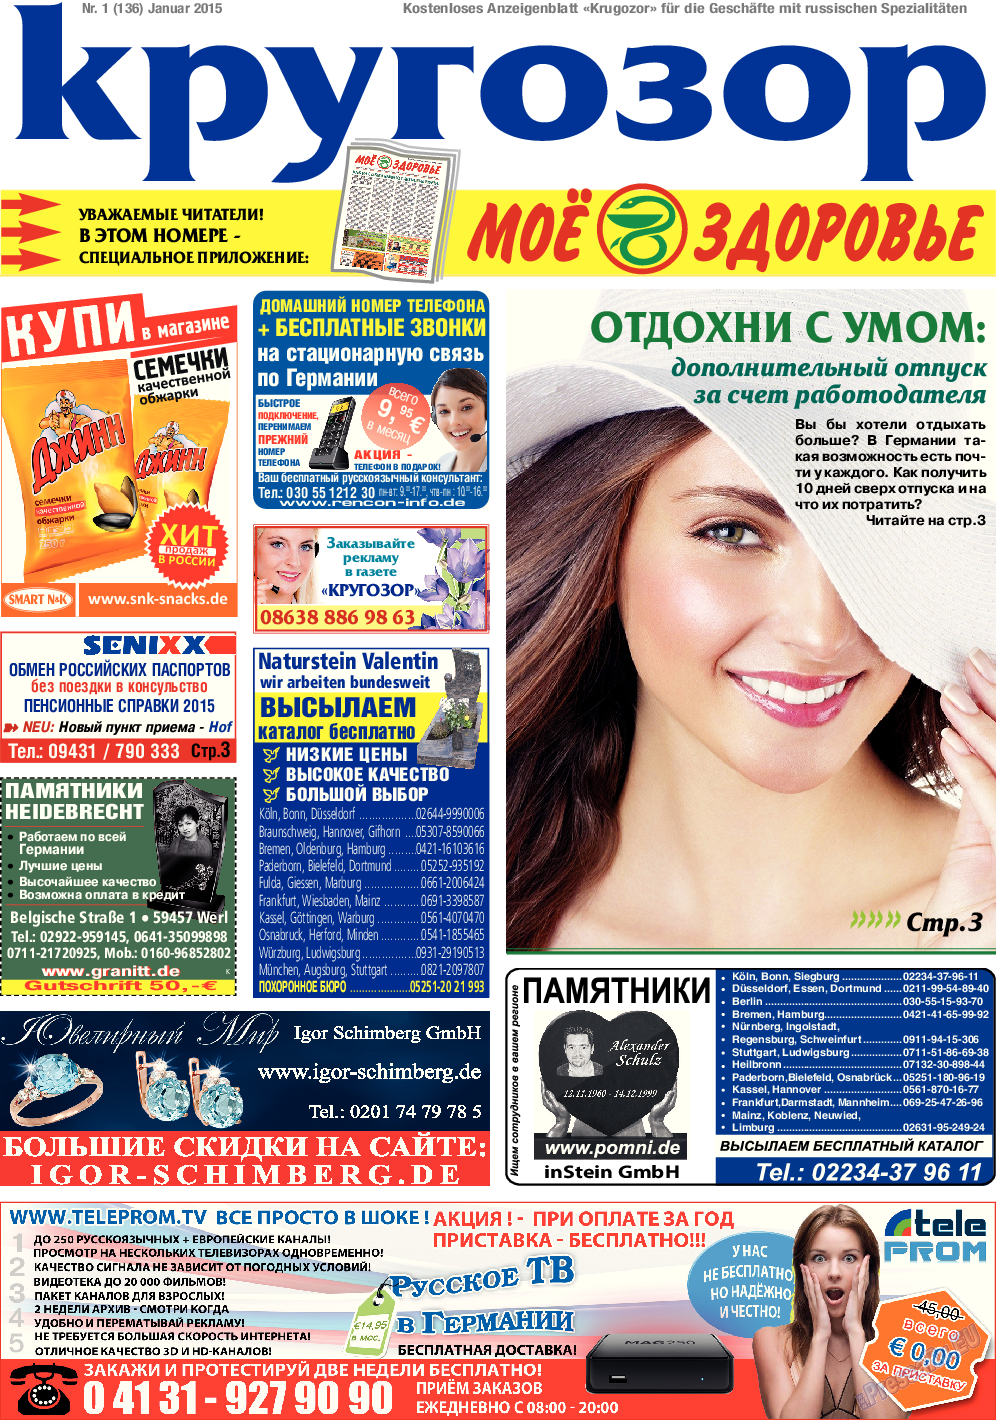 Кругозор (газета). 2015 год, номер 1, стр. 1